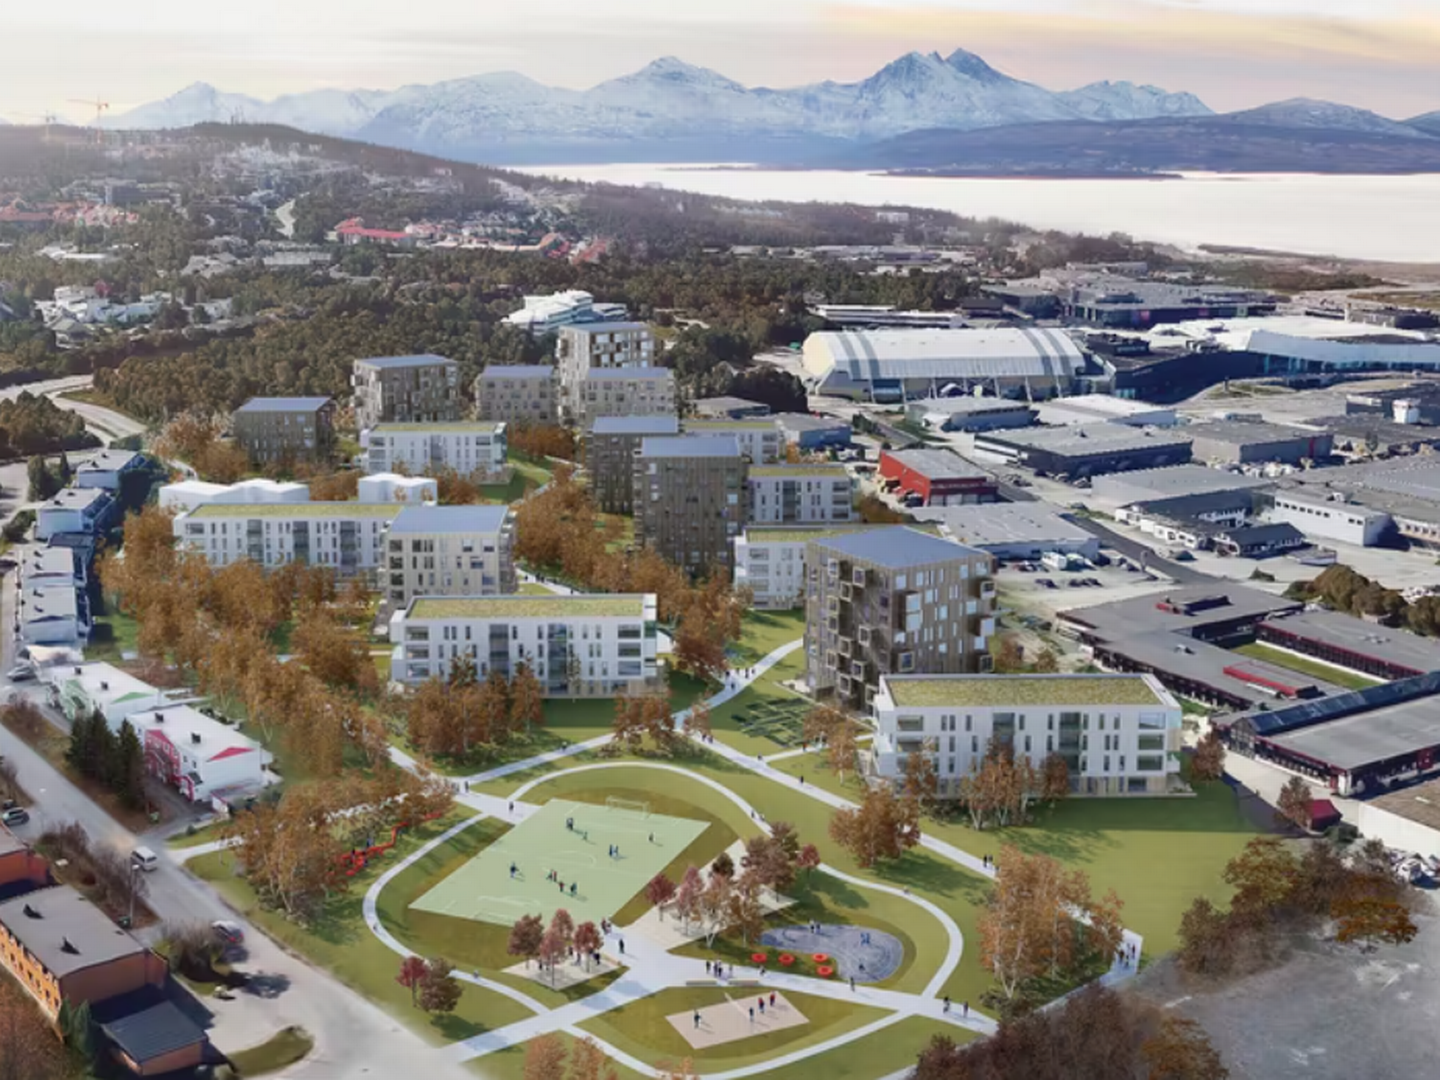 INTERESSE: Peab Eiendomsutvikling skal bygge 600 boliger på vestsiden av Tromsøya, sammen med det kommunale foretaket Arnestedet. | Foto: Eienrhage